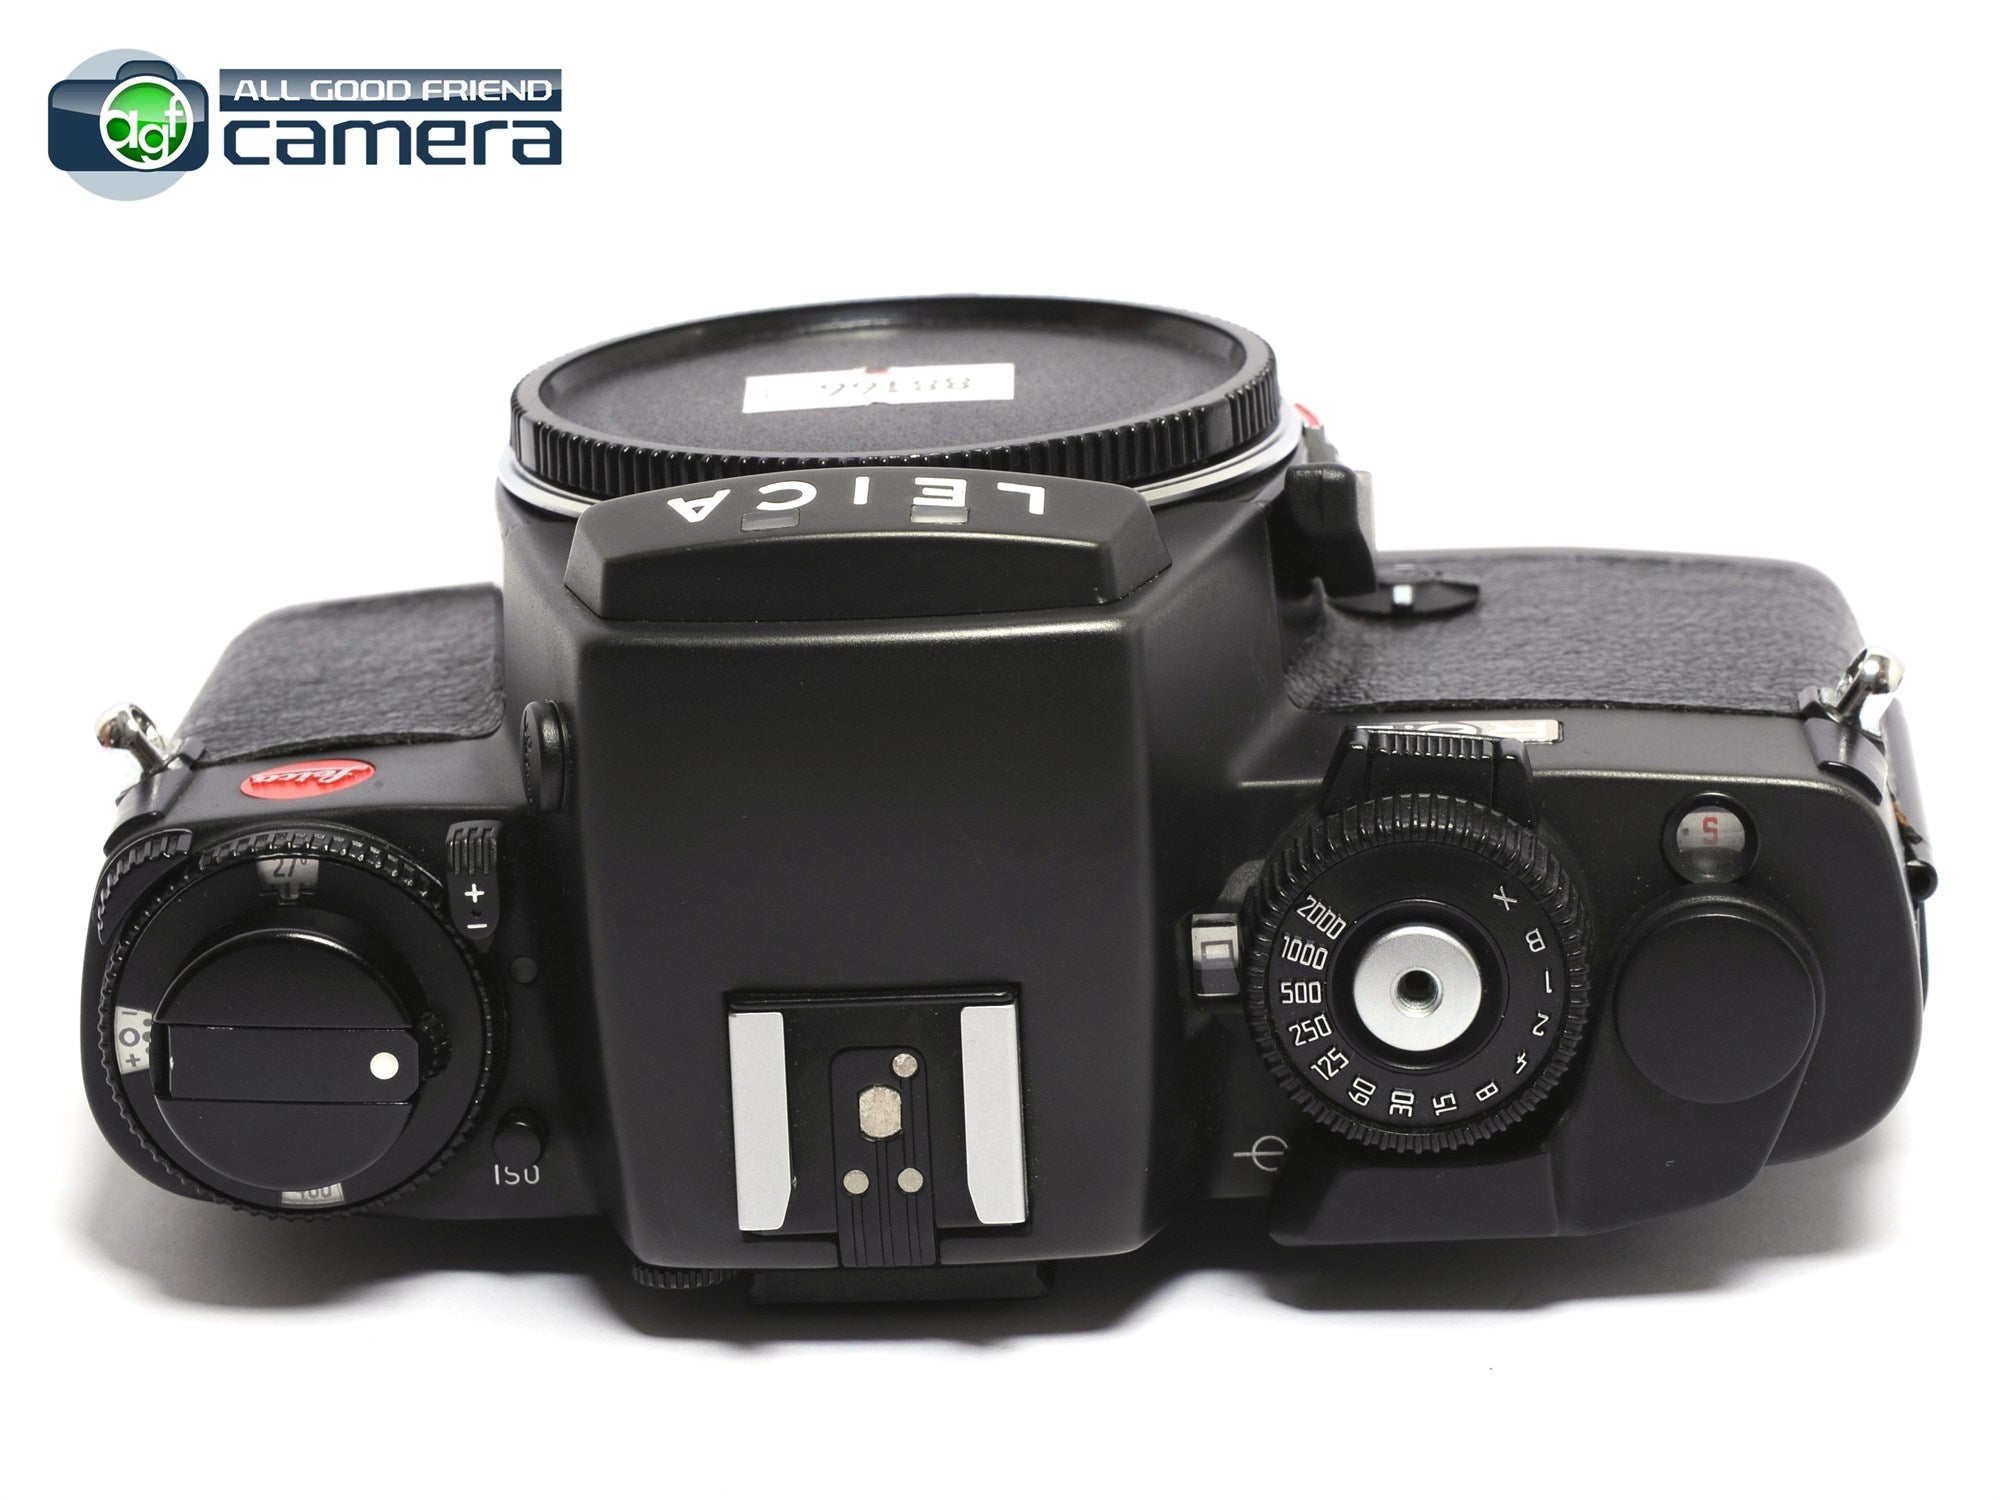 Leica R6.2 Film SLR Camera Black *EX+* – AGFCamera